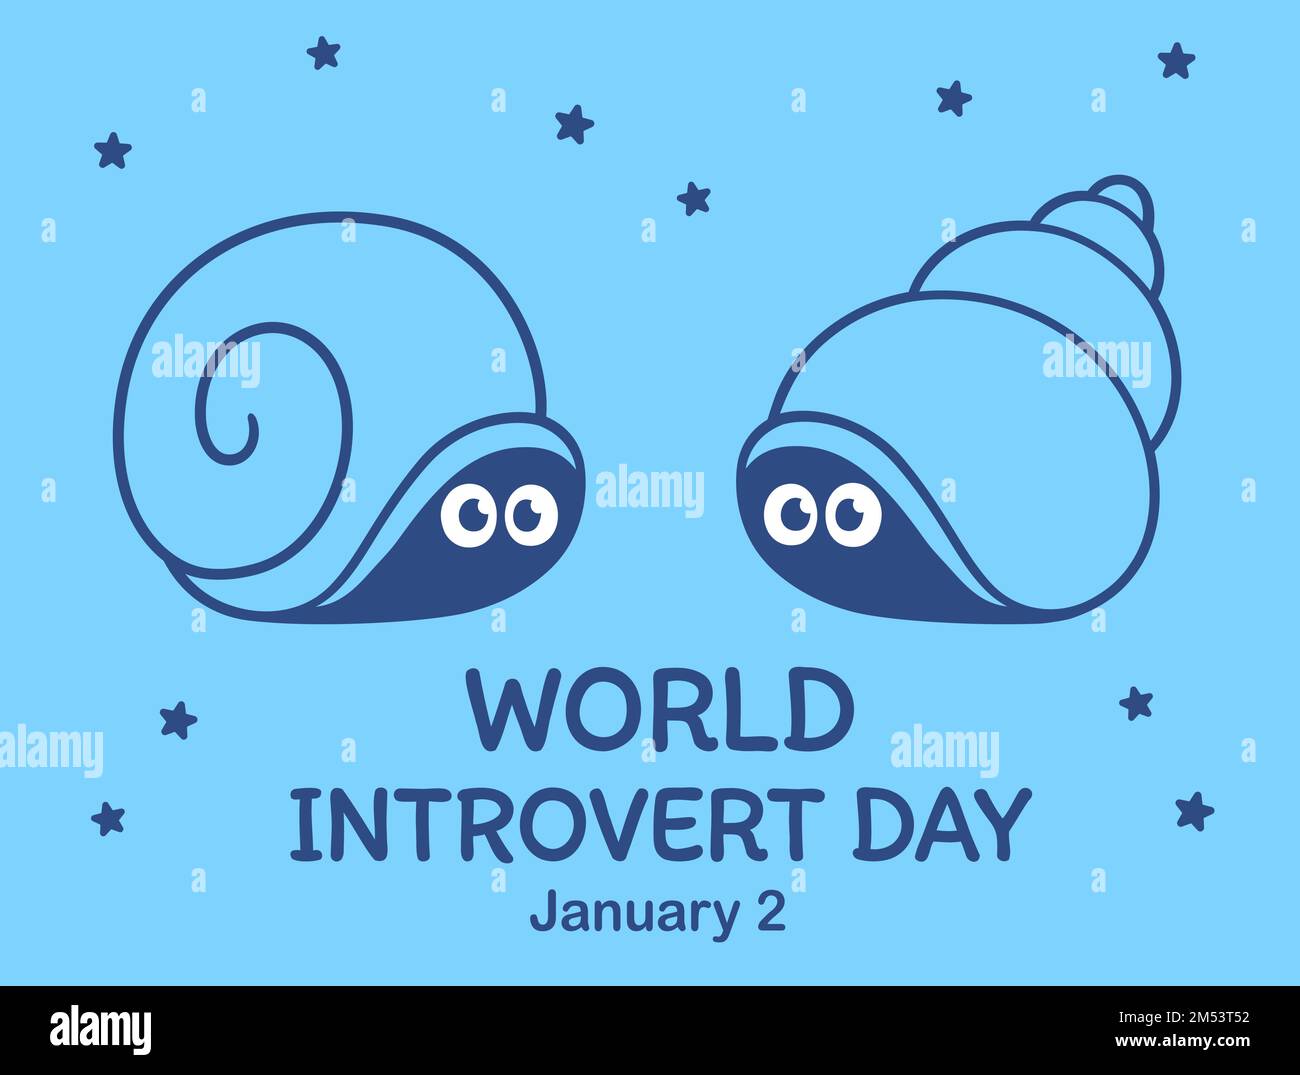 Illustration de la Journée mondiale de l'introvertit. Deux adorables escargots de dessins animés se cachent dans leurs coquilles. Dessin vectoriel. Illustration de Vecteur